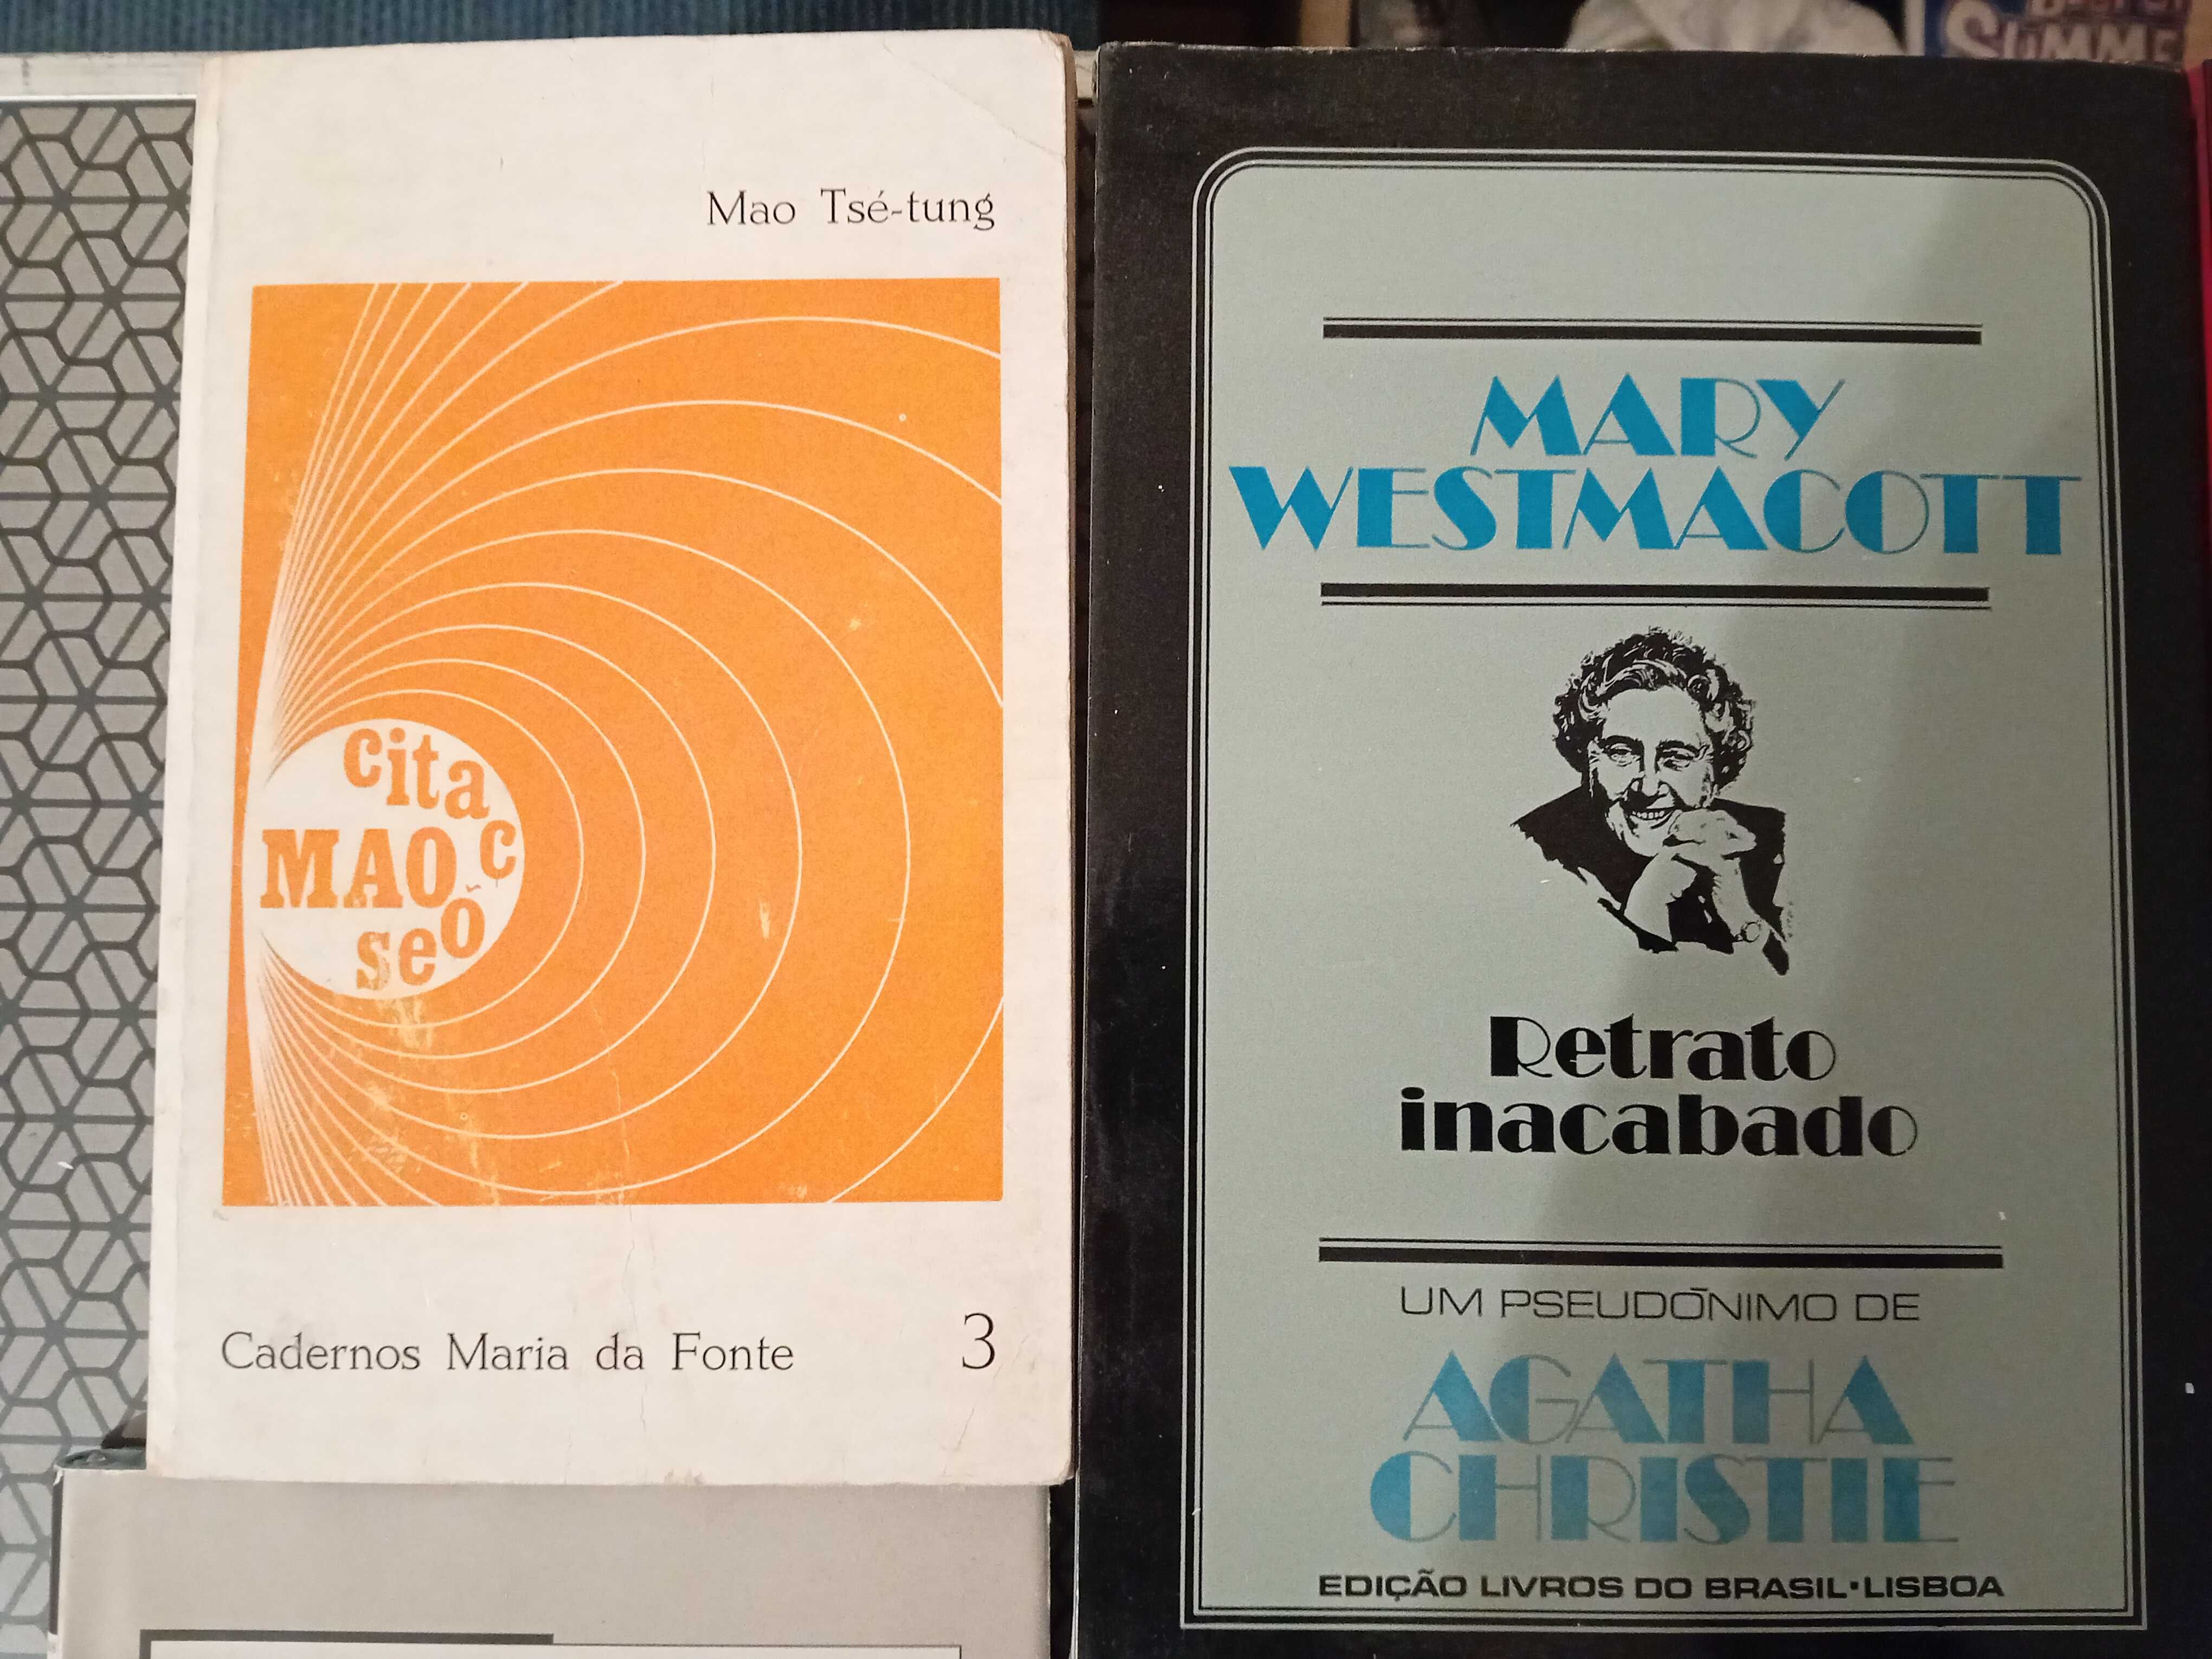 Livros Antigos e Recentes de Literatura Internacional - Portes Grátis.